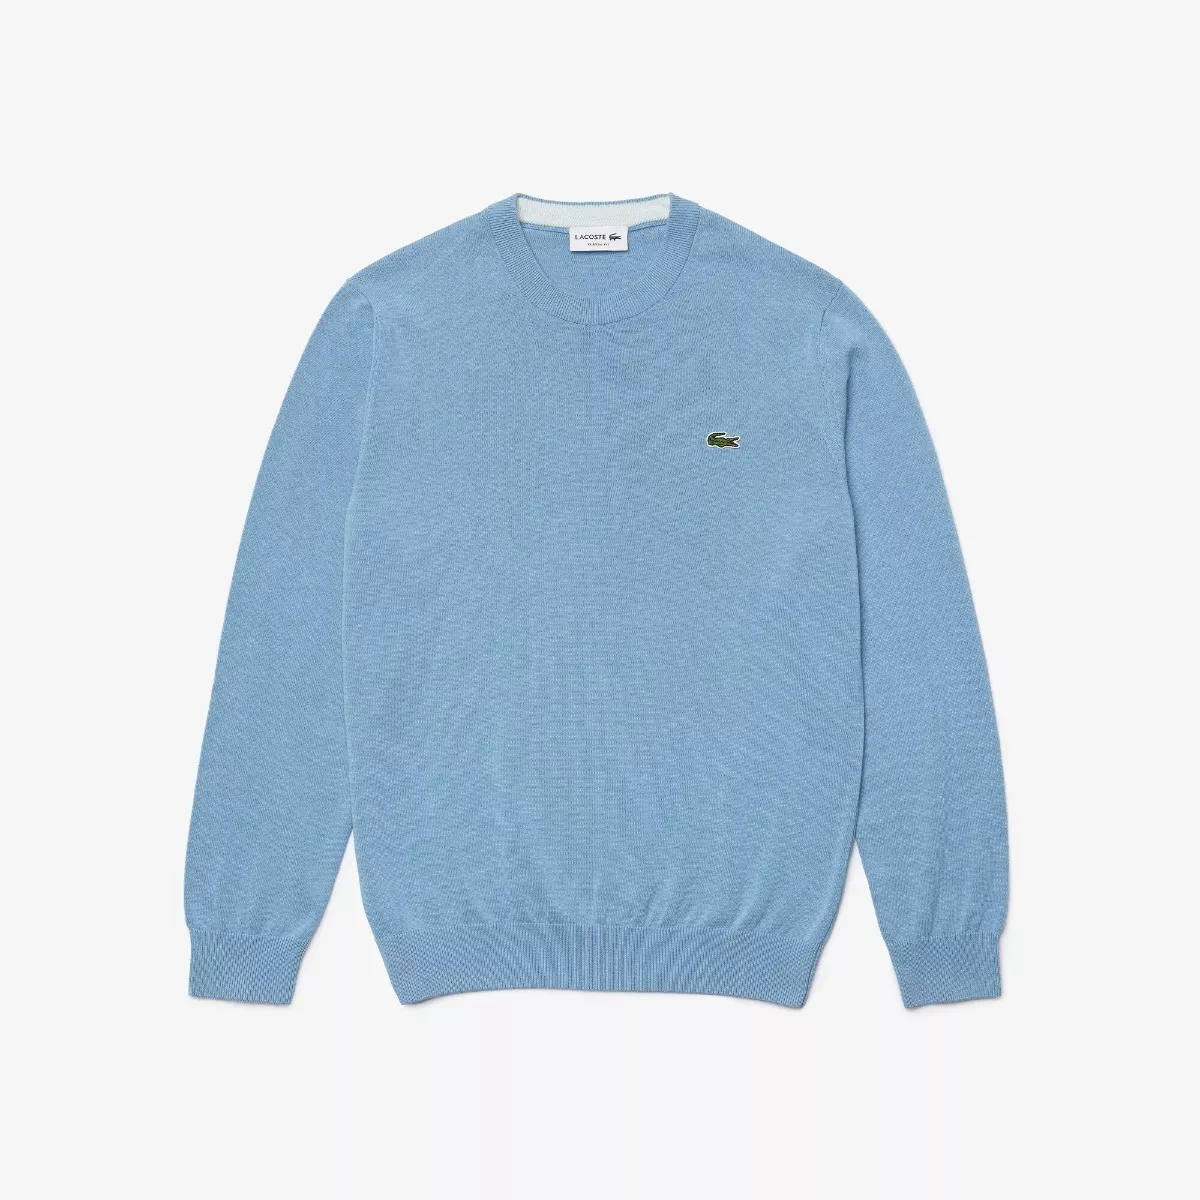 Sweater Lacoste 9327drw Algodón Orgánico Azul Para Hombre